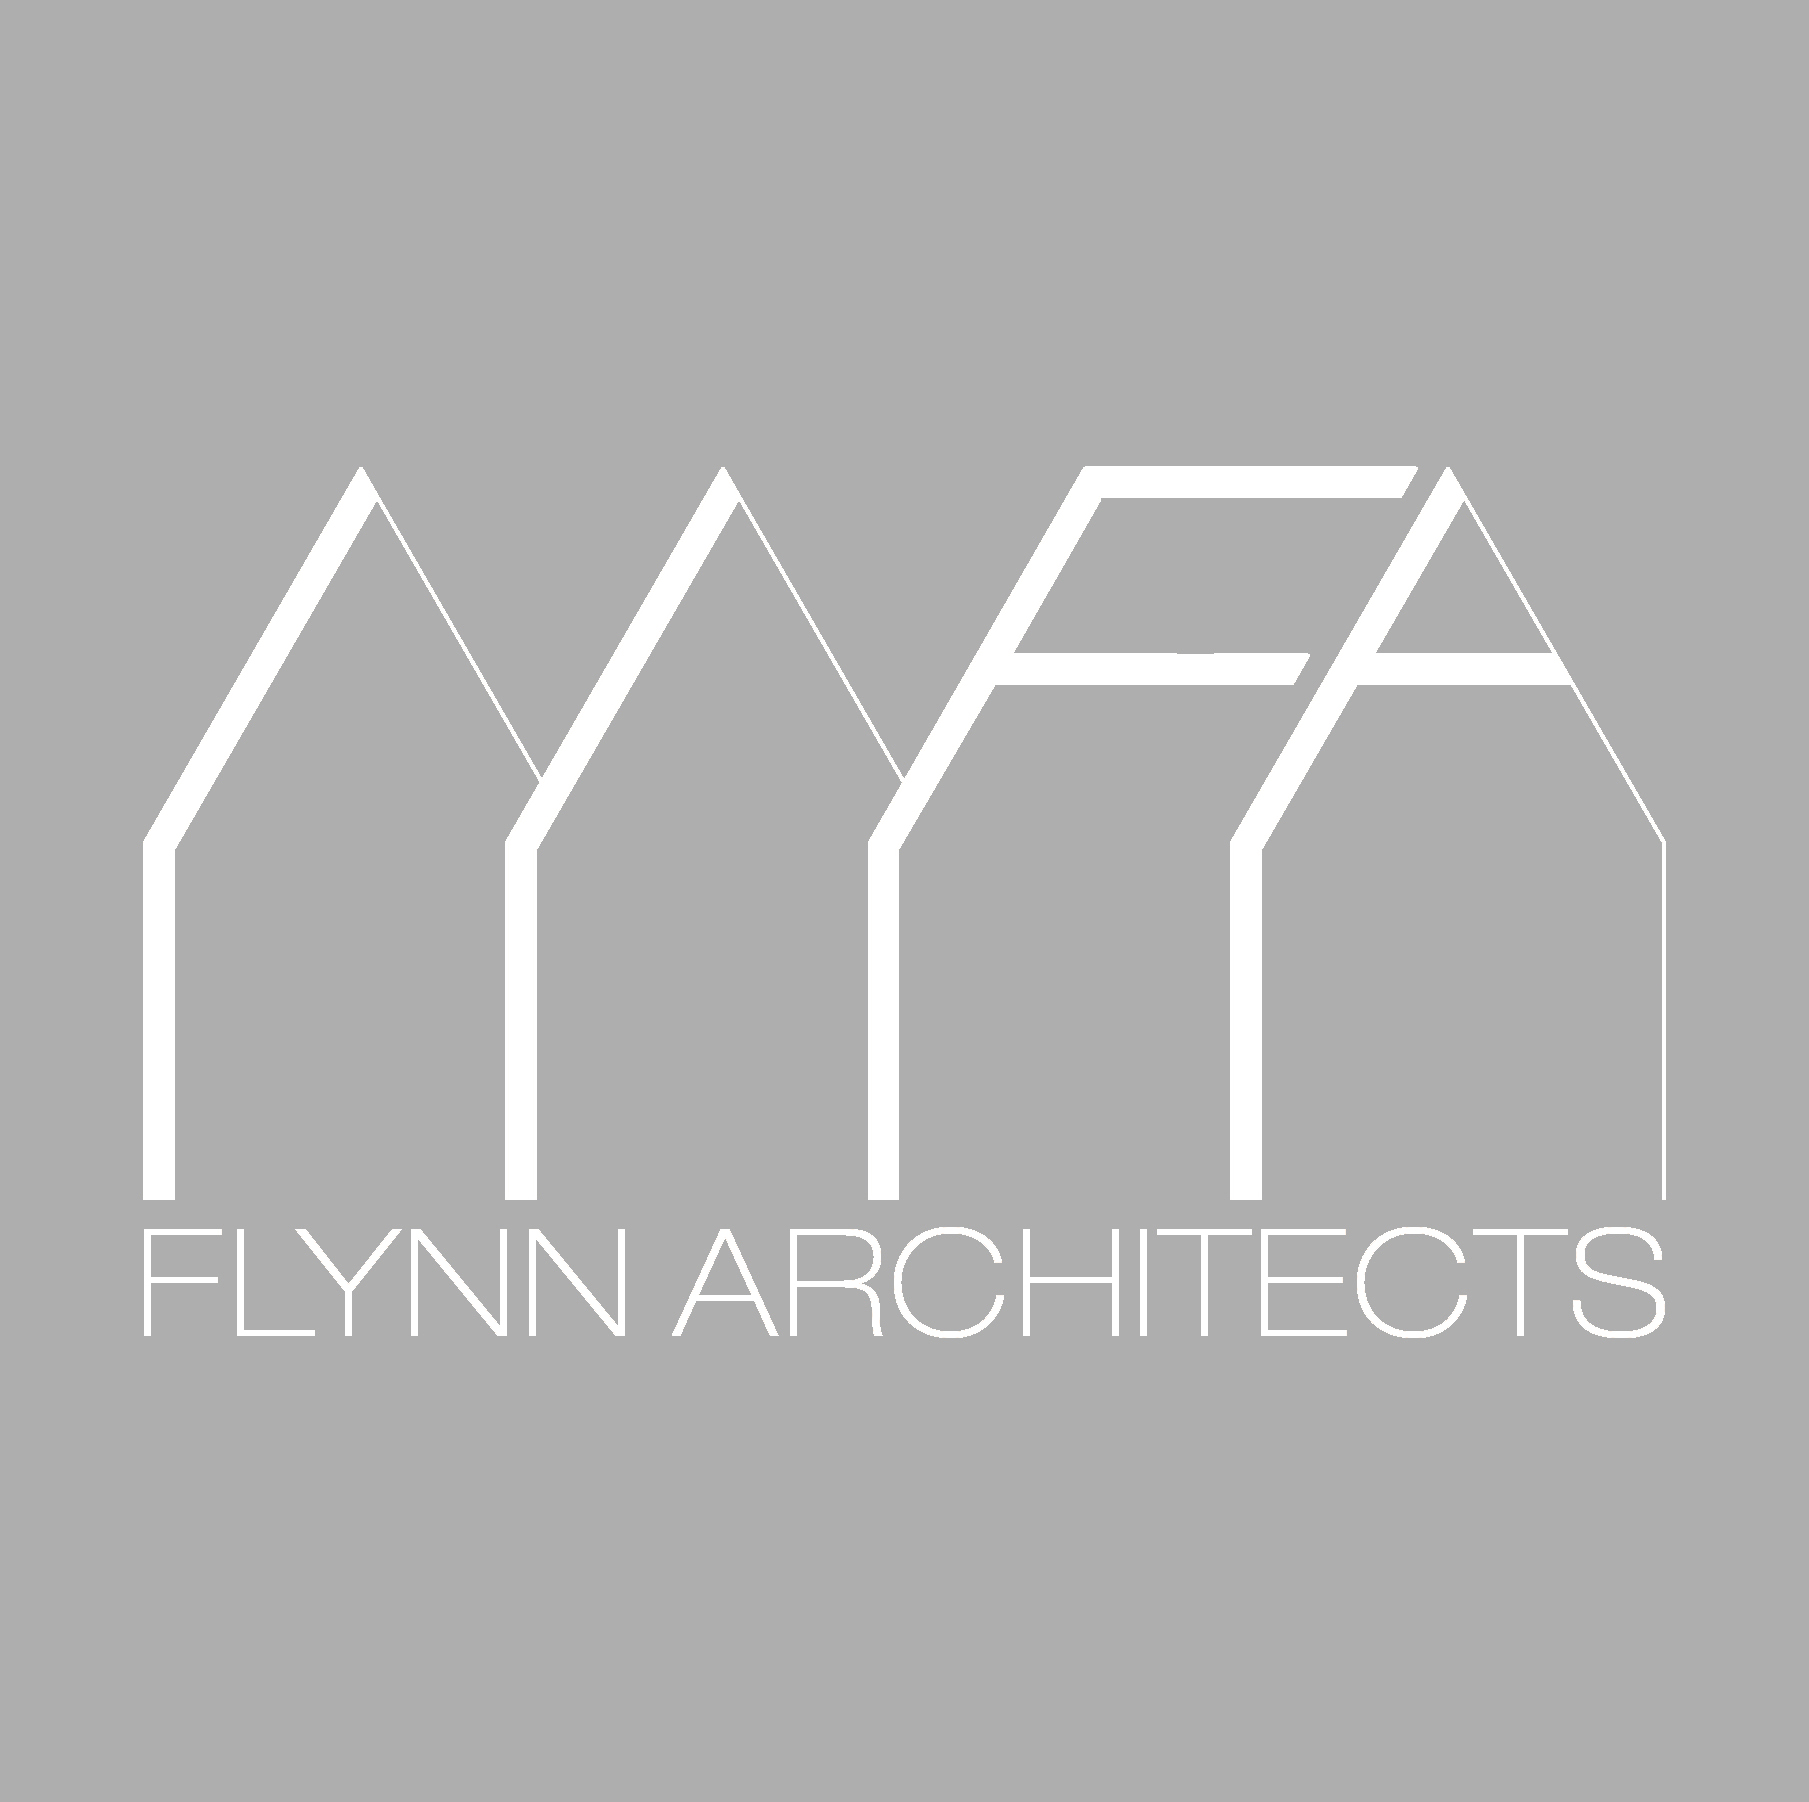 Flynn Architects